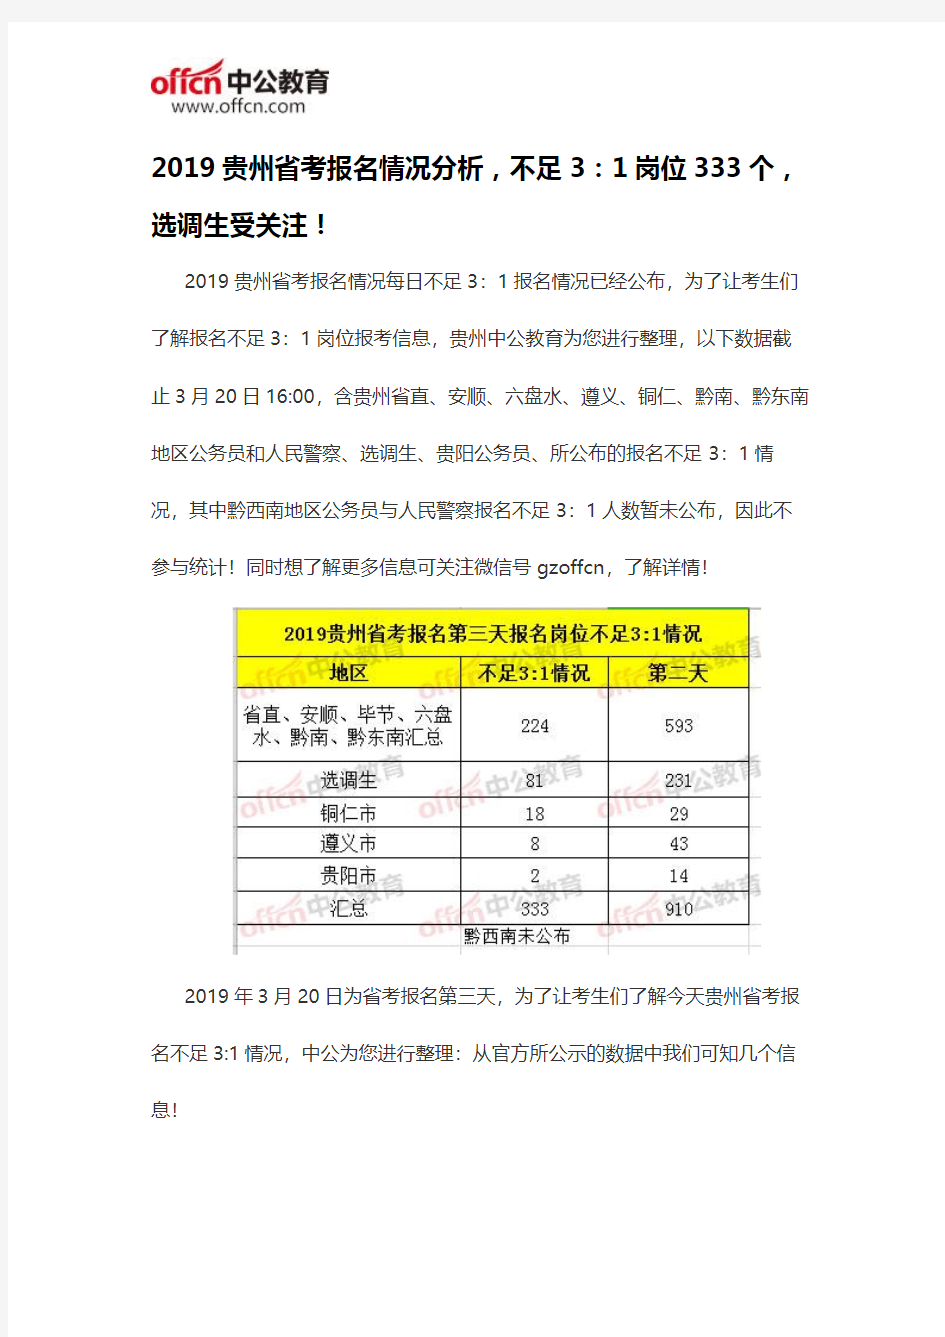 2019贵州省考报名情况分析,不足3：1岗位333个,选调生受关注!